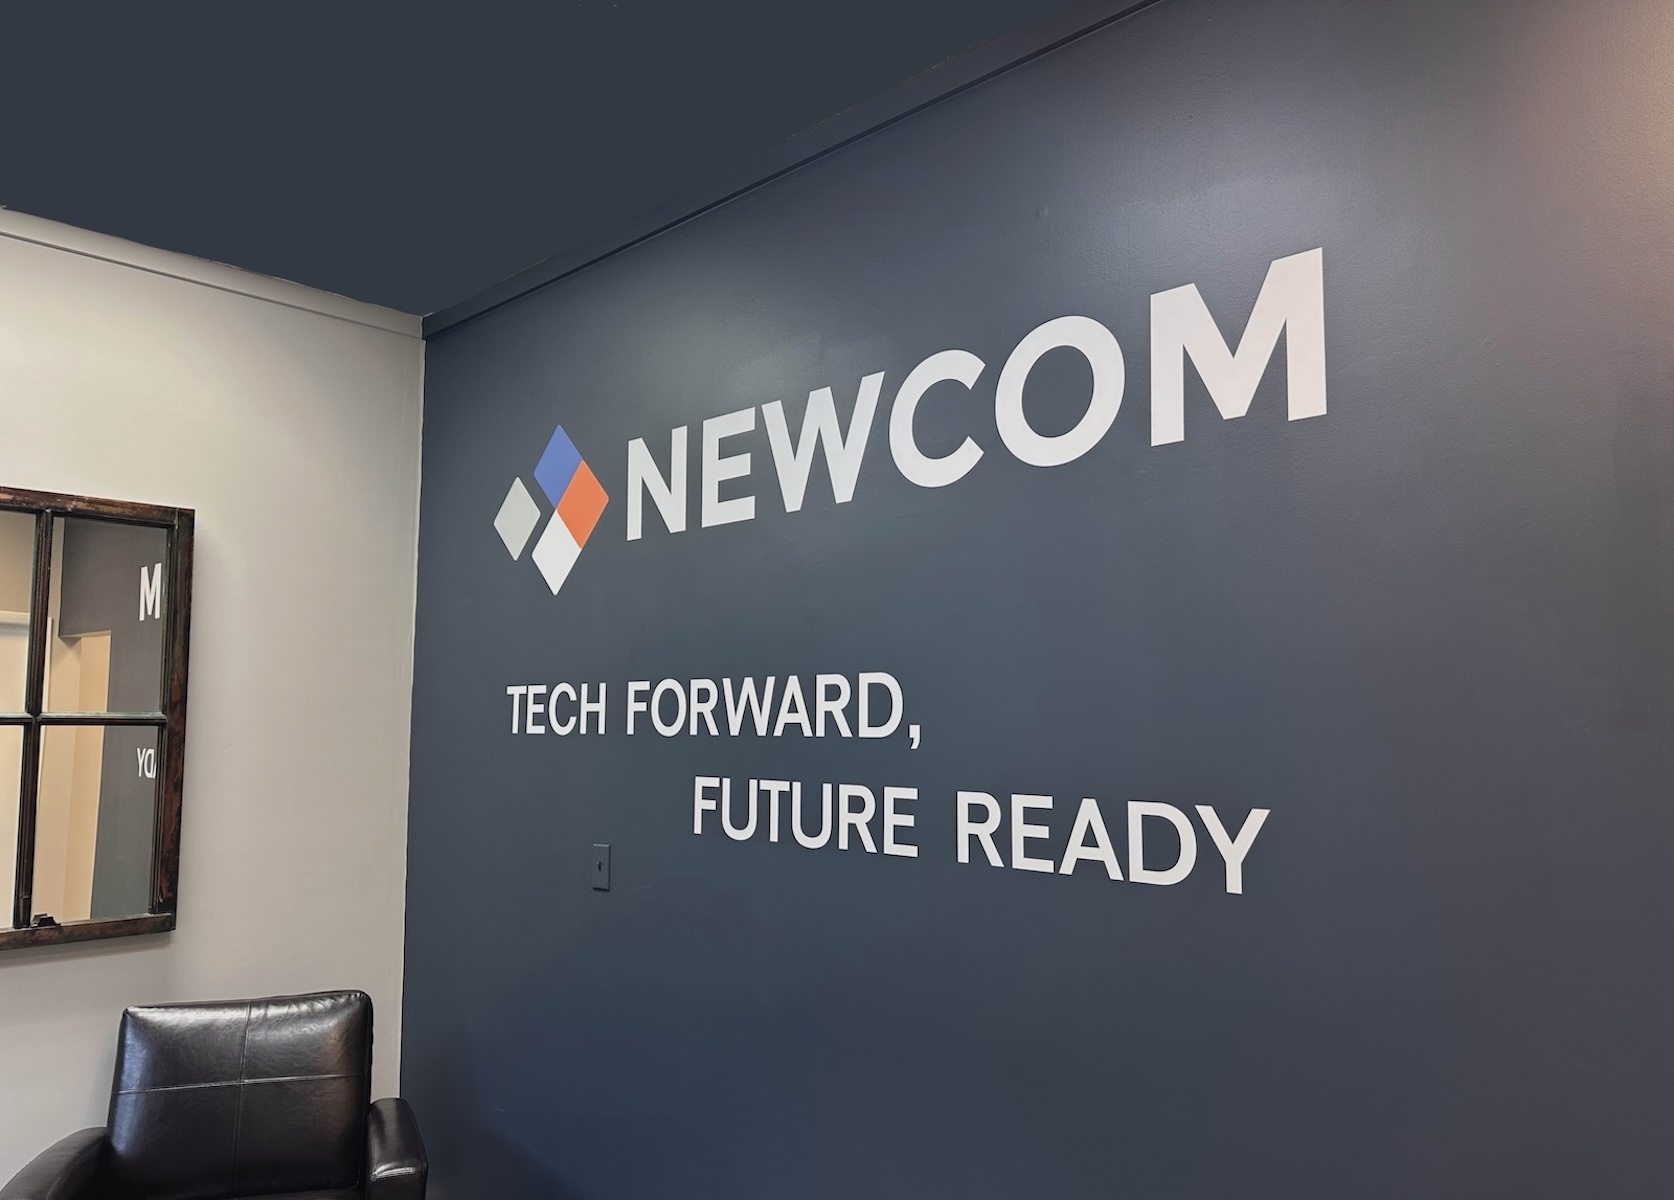 NEWCOM Announces a Brand Refresh